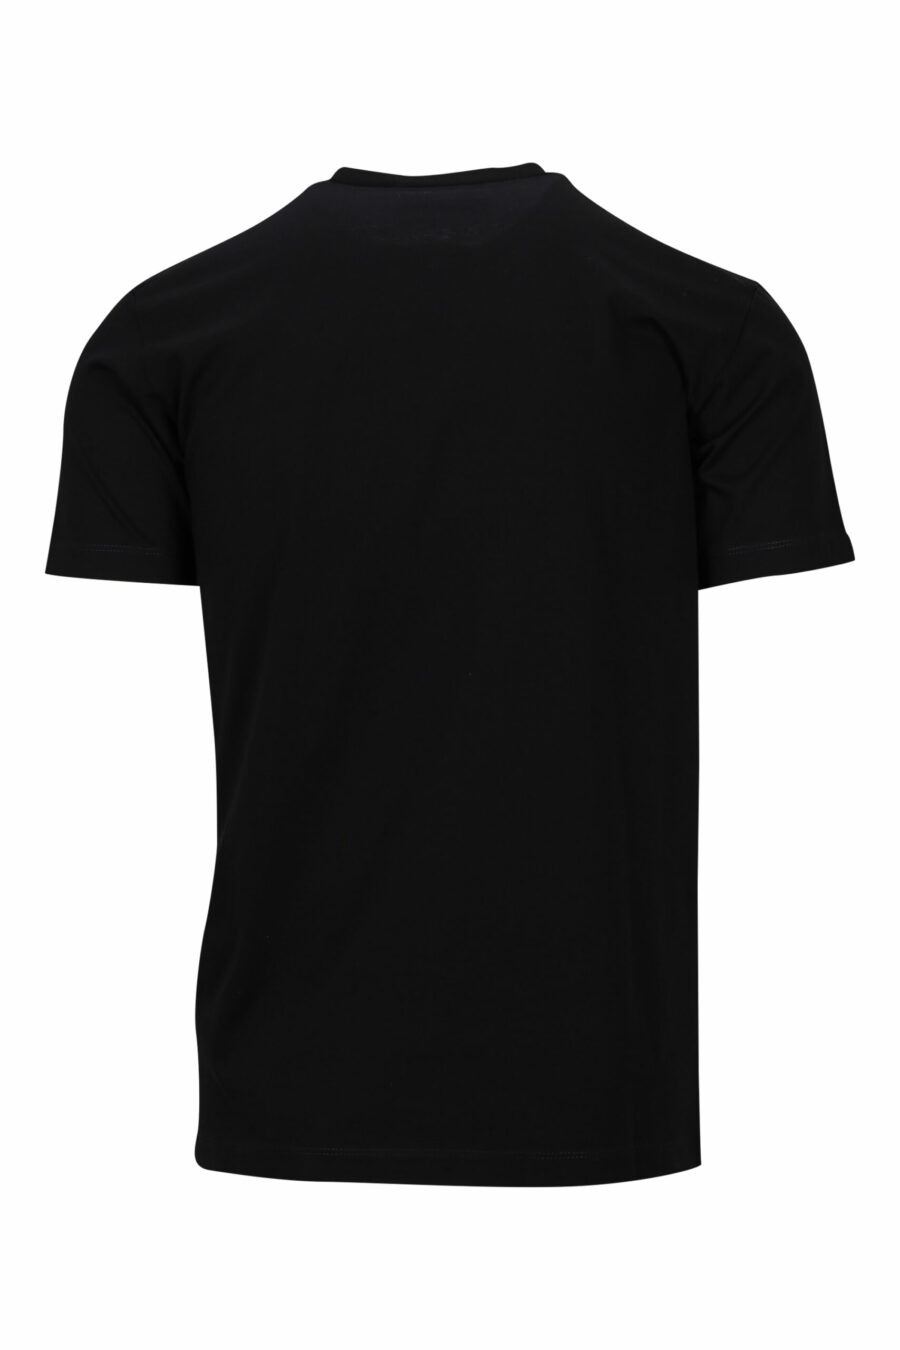 Camiseta negra con logo en placa pequeña - 8054148370800 scaled